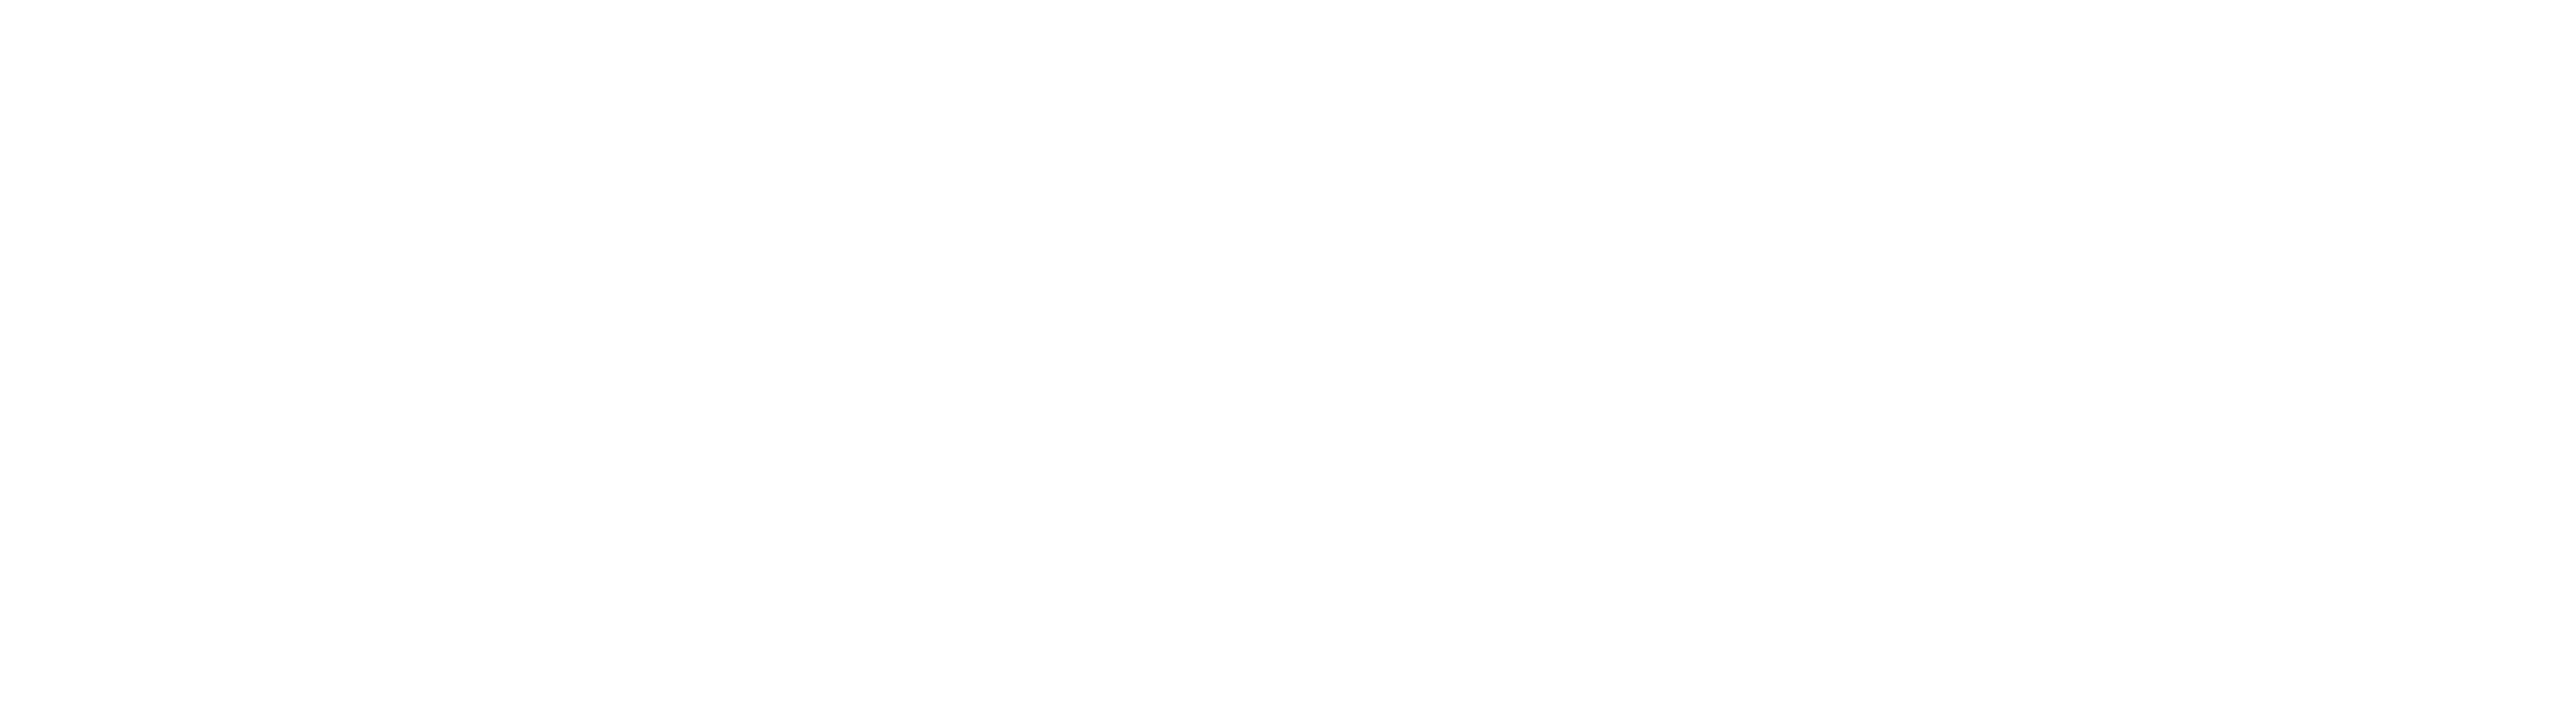 836-elite-iq-logo-white.png